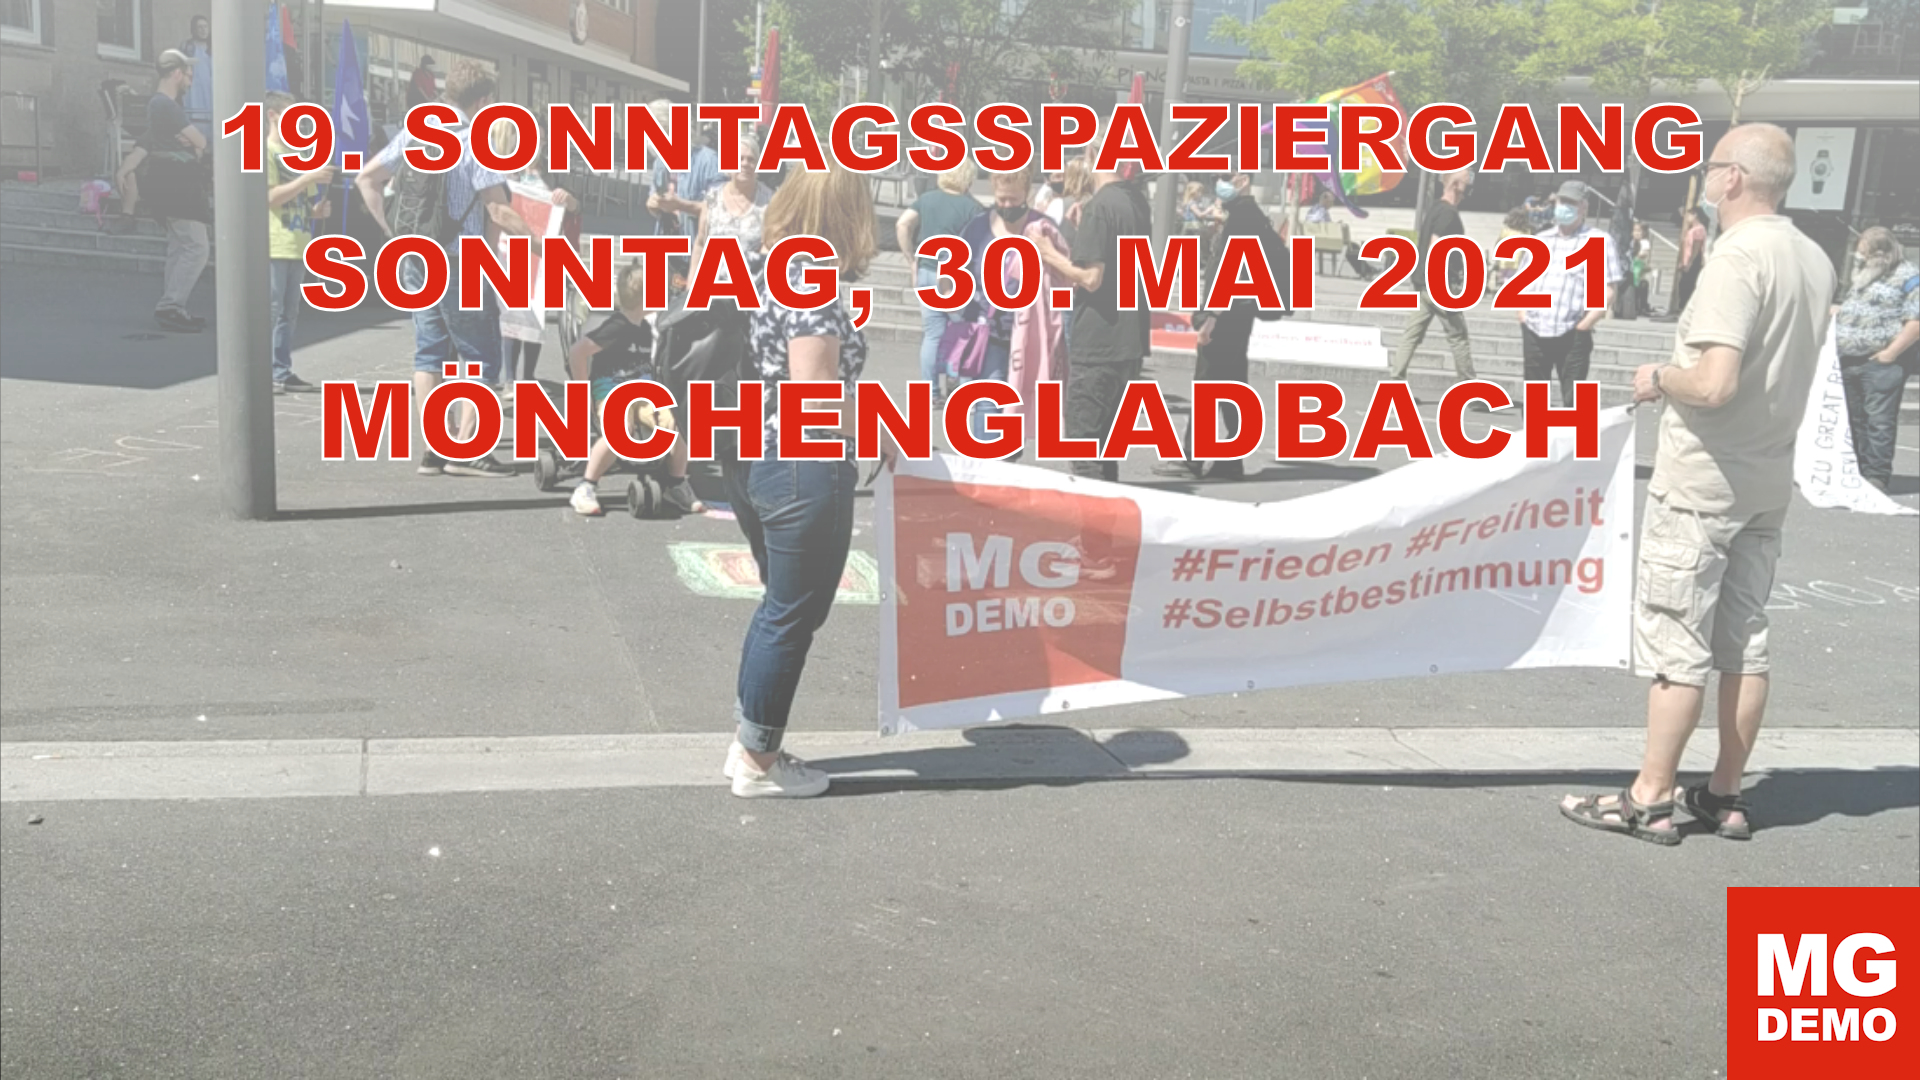 19. MG DEMO Sonntagsspaziergang am 30.05.2021 in Mönchengladbach und Rheydt